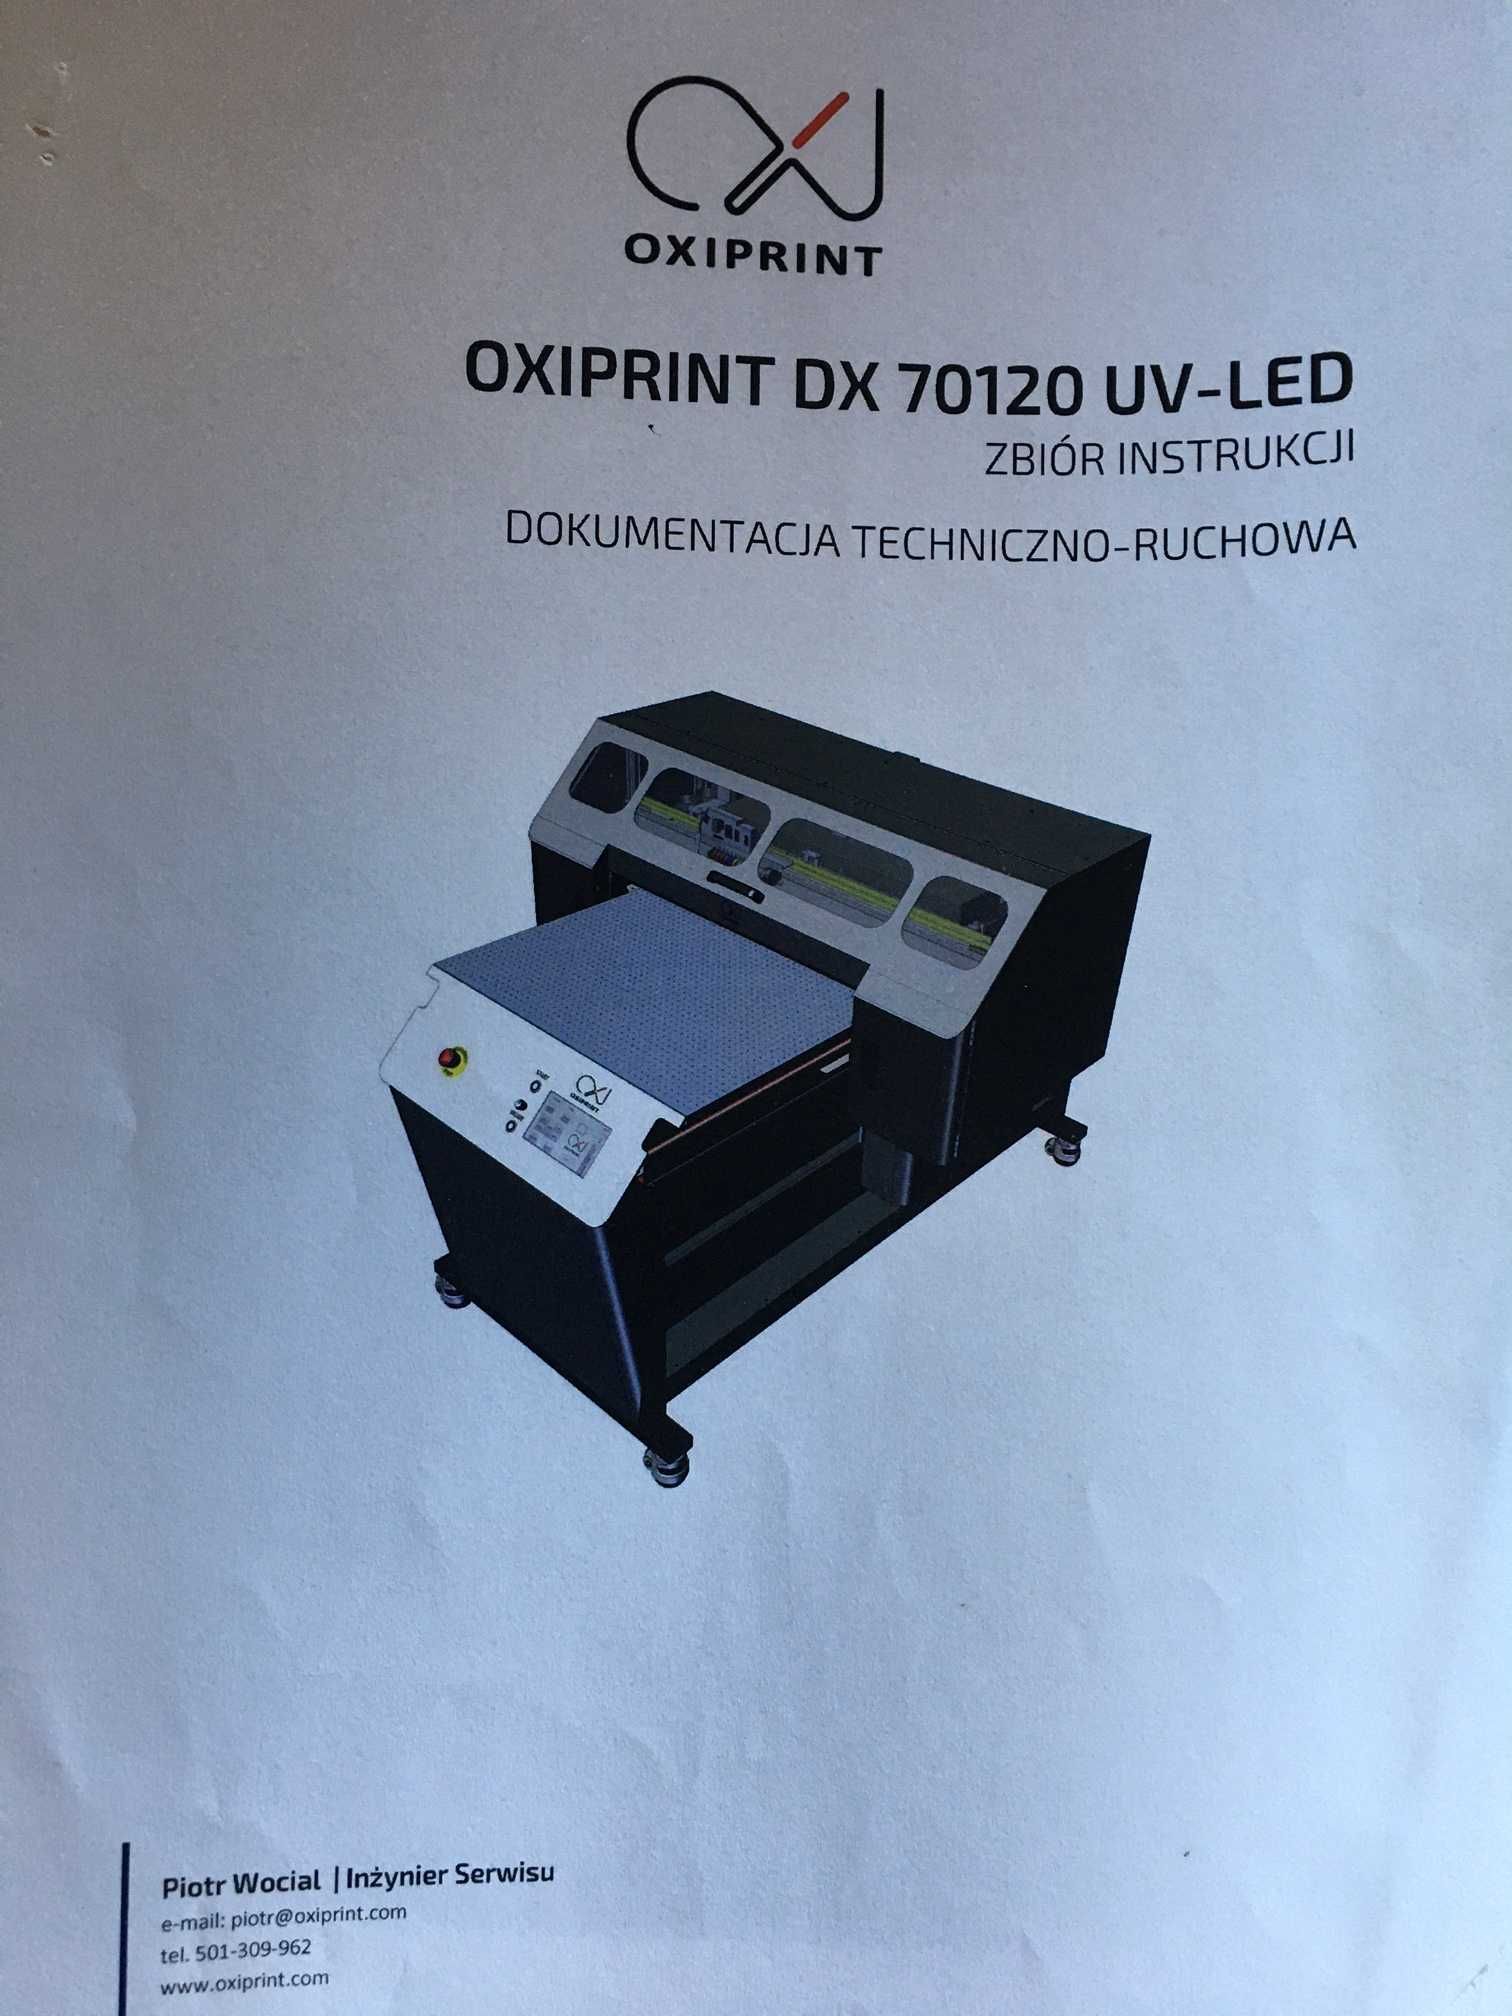 drukarka UV ploter UV oxiprint